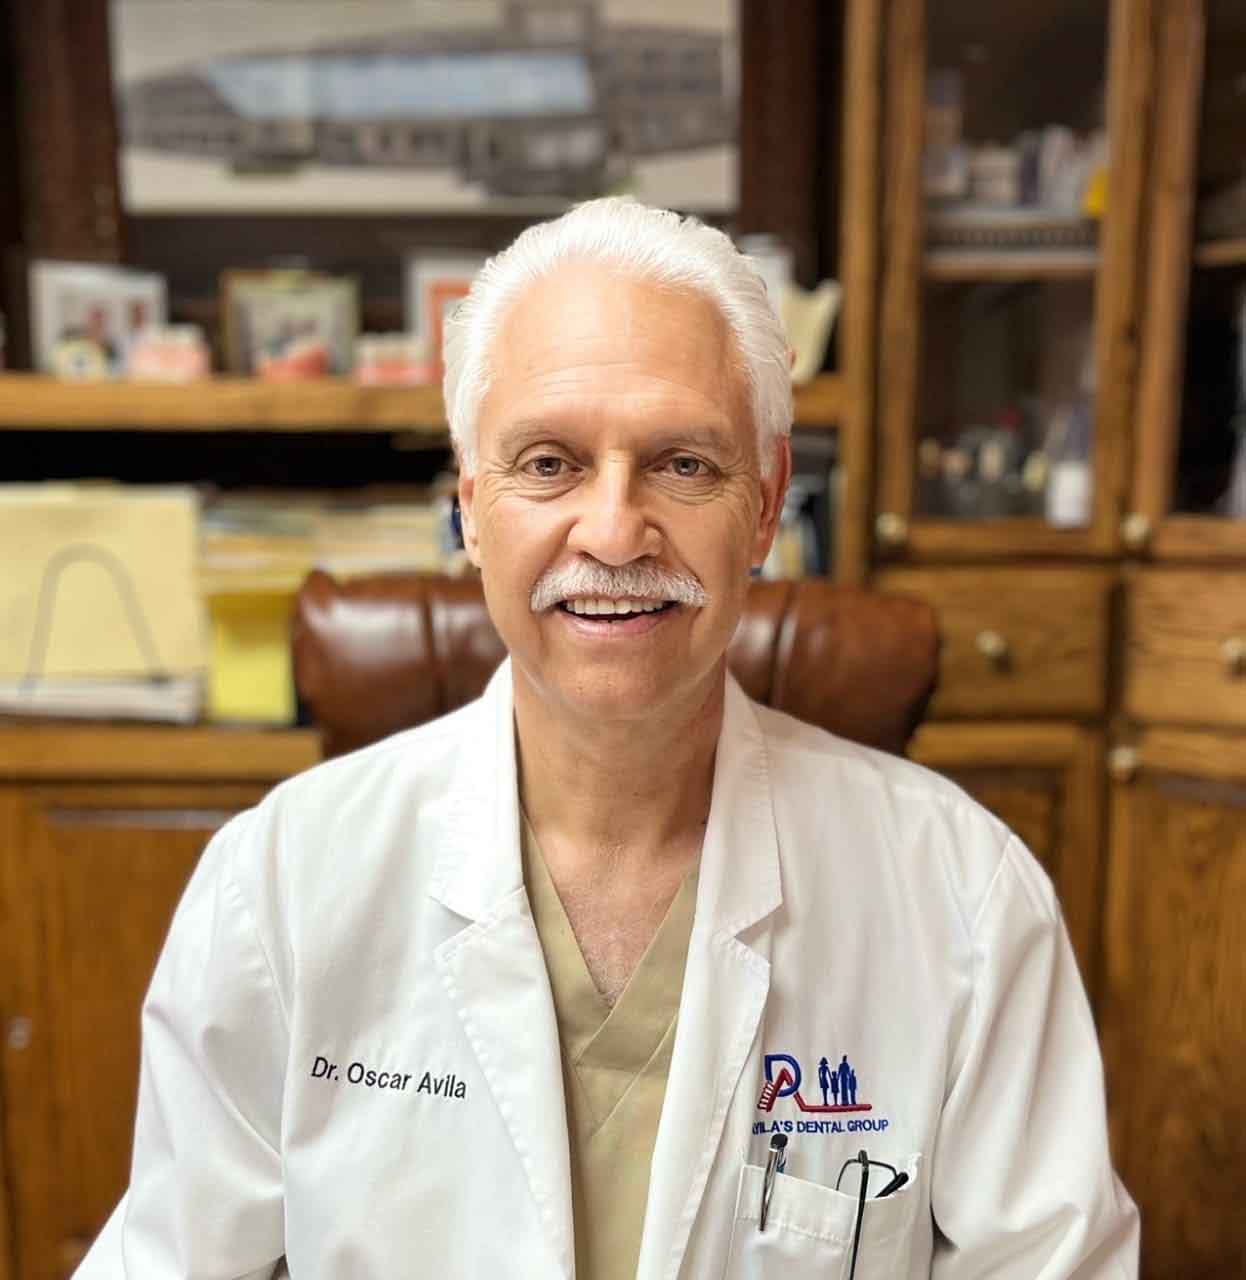 Dr. Oscar Avila